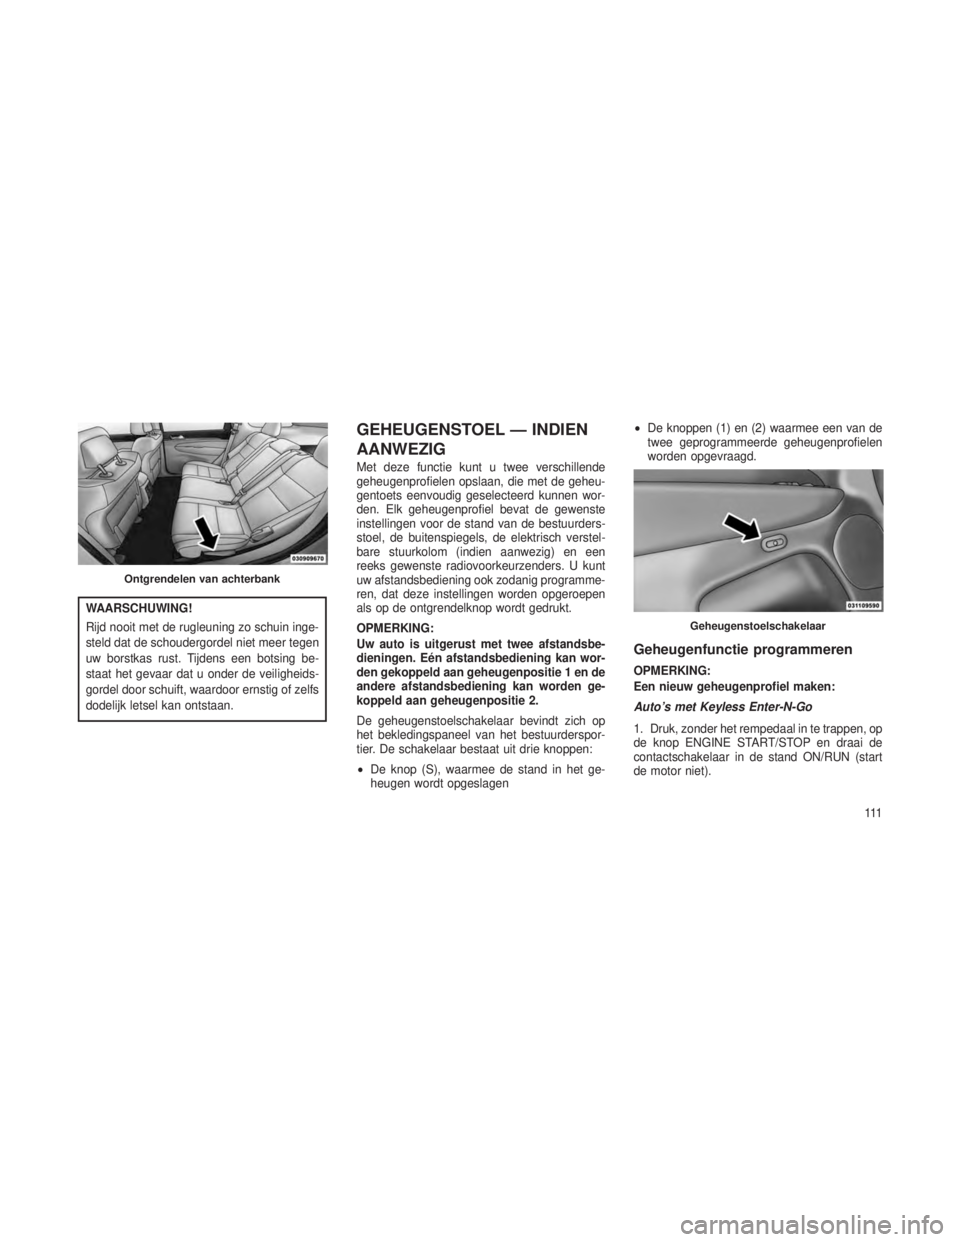 JEEP GRAND CHEROKEE 2013  Instructieboek (in Dutch) WAARSCHUWING!
Rijd nooit met de rugleuning zo schuin inge-
steld dat de schoudergordel niet meer tegen
uw borstkas rust. Tijdens een botsing be-
staat het gevaar dat u onder de veiligheids-
gordel doo